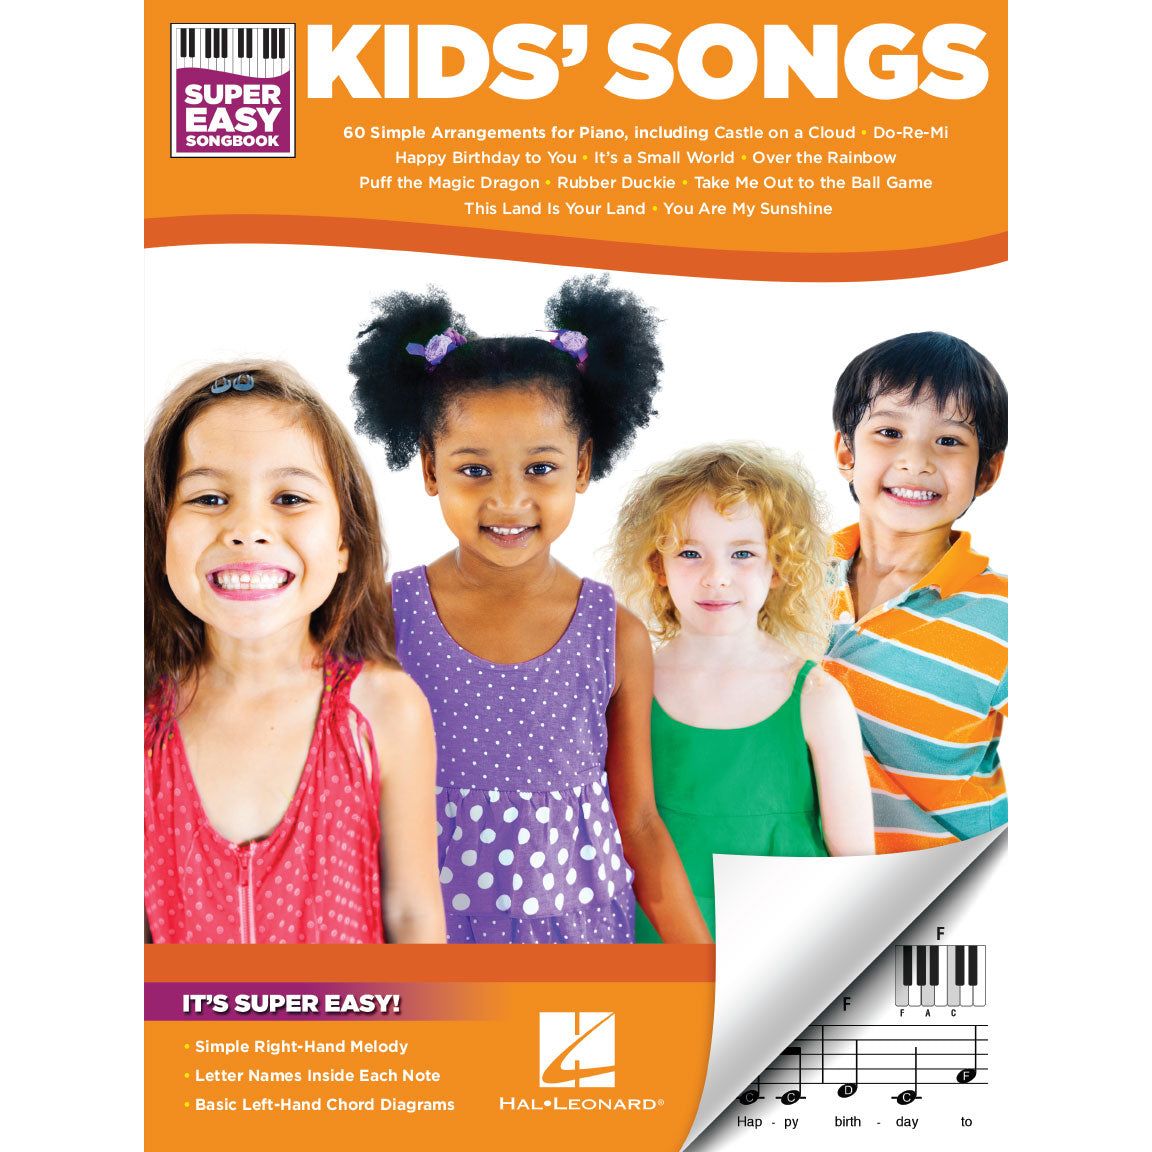 Super Easy Songbook - Kids Songs